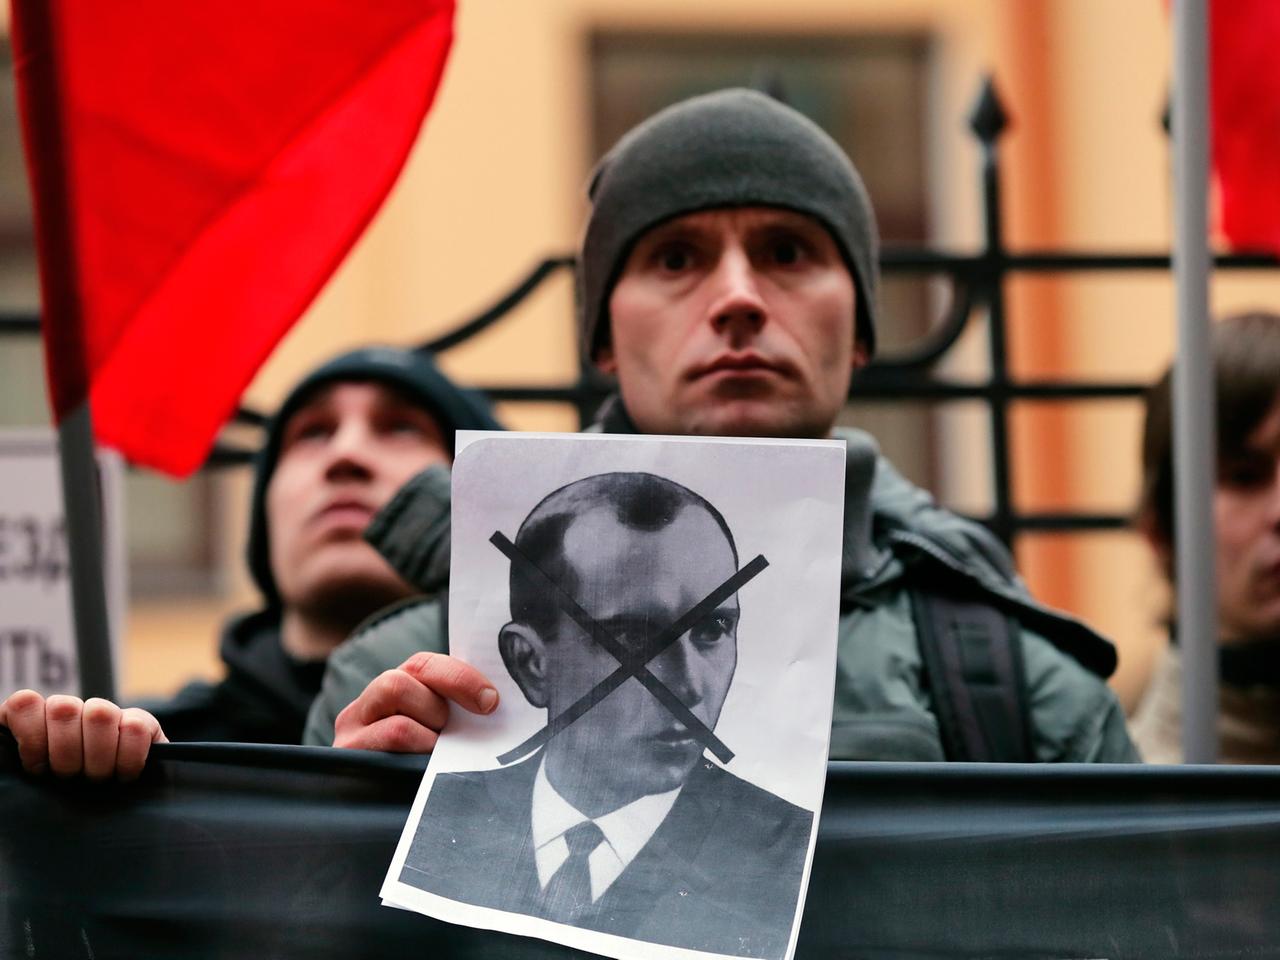 Ein Demonstrant hält ein Schwarz-weiß-Bild von Stepan Bandera in der Hand, dessen Gesicht darauf durchgestrichen ist, im Hintergrund weitere Demonstranten und rote Fahnen